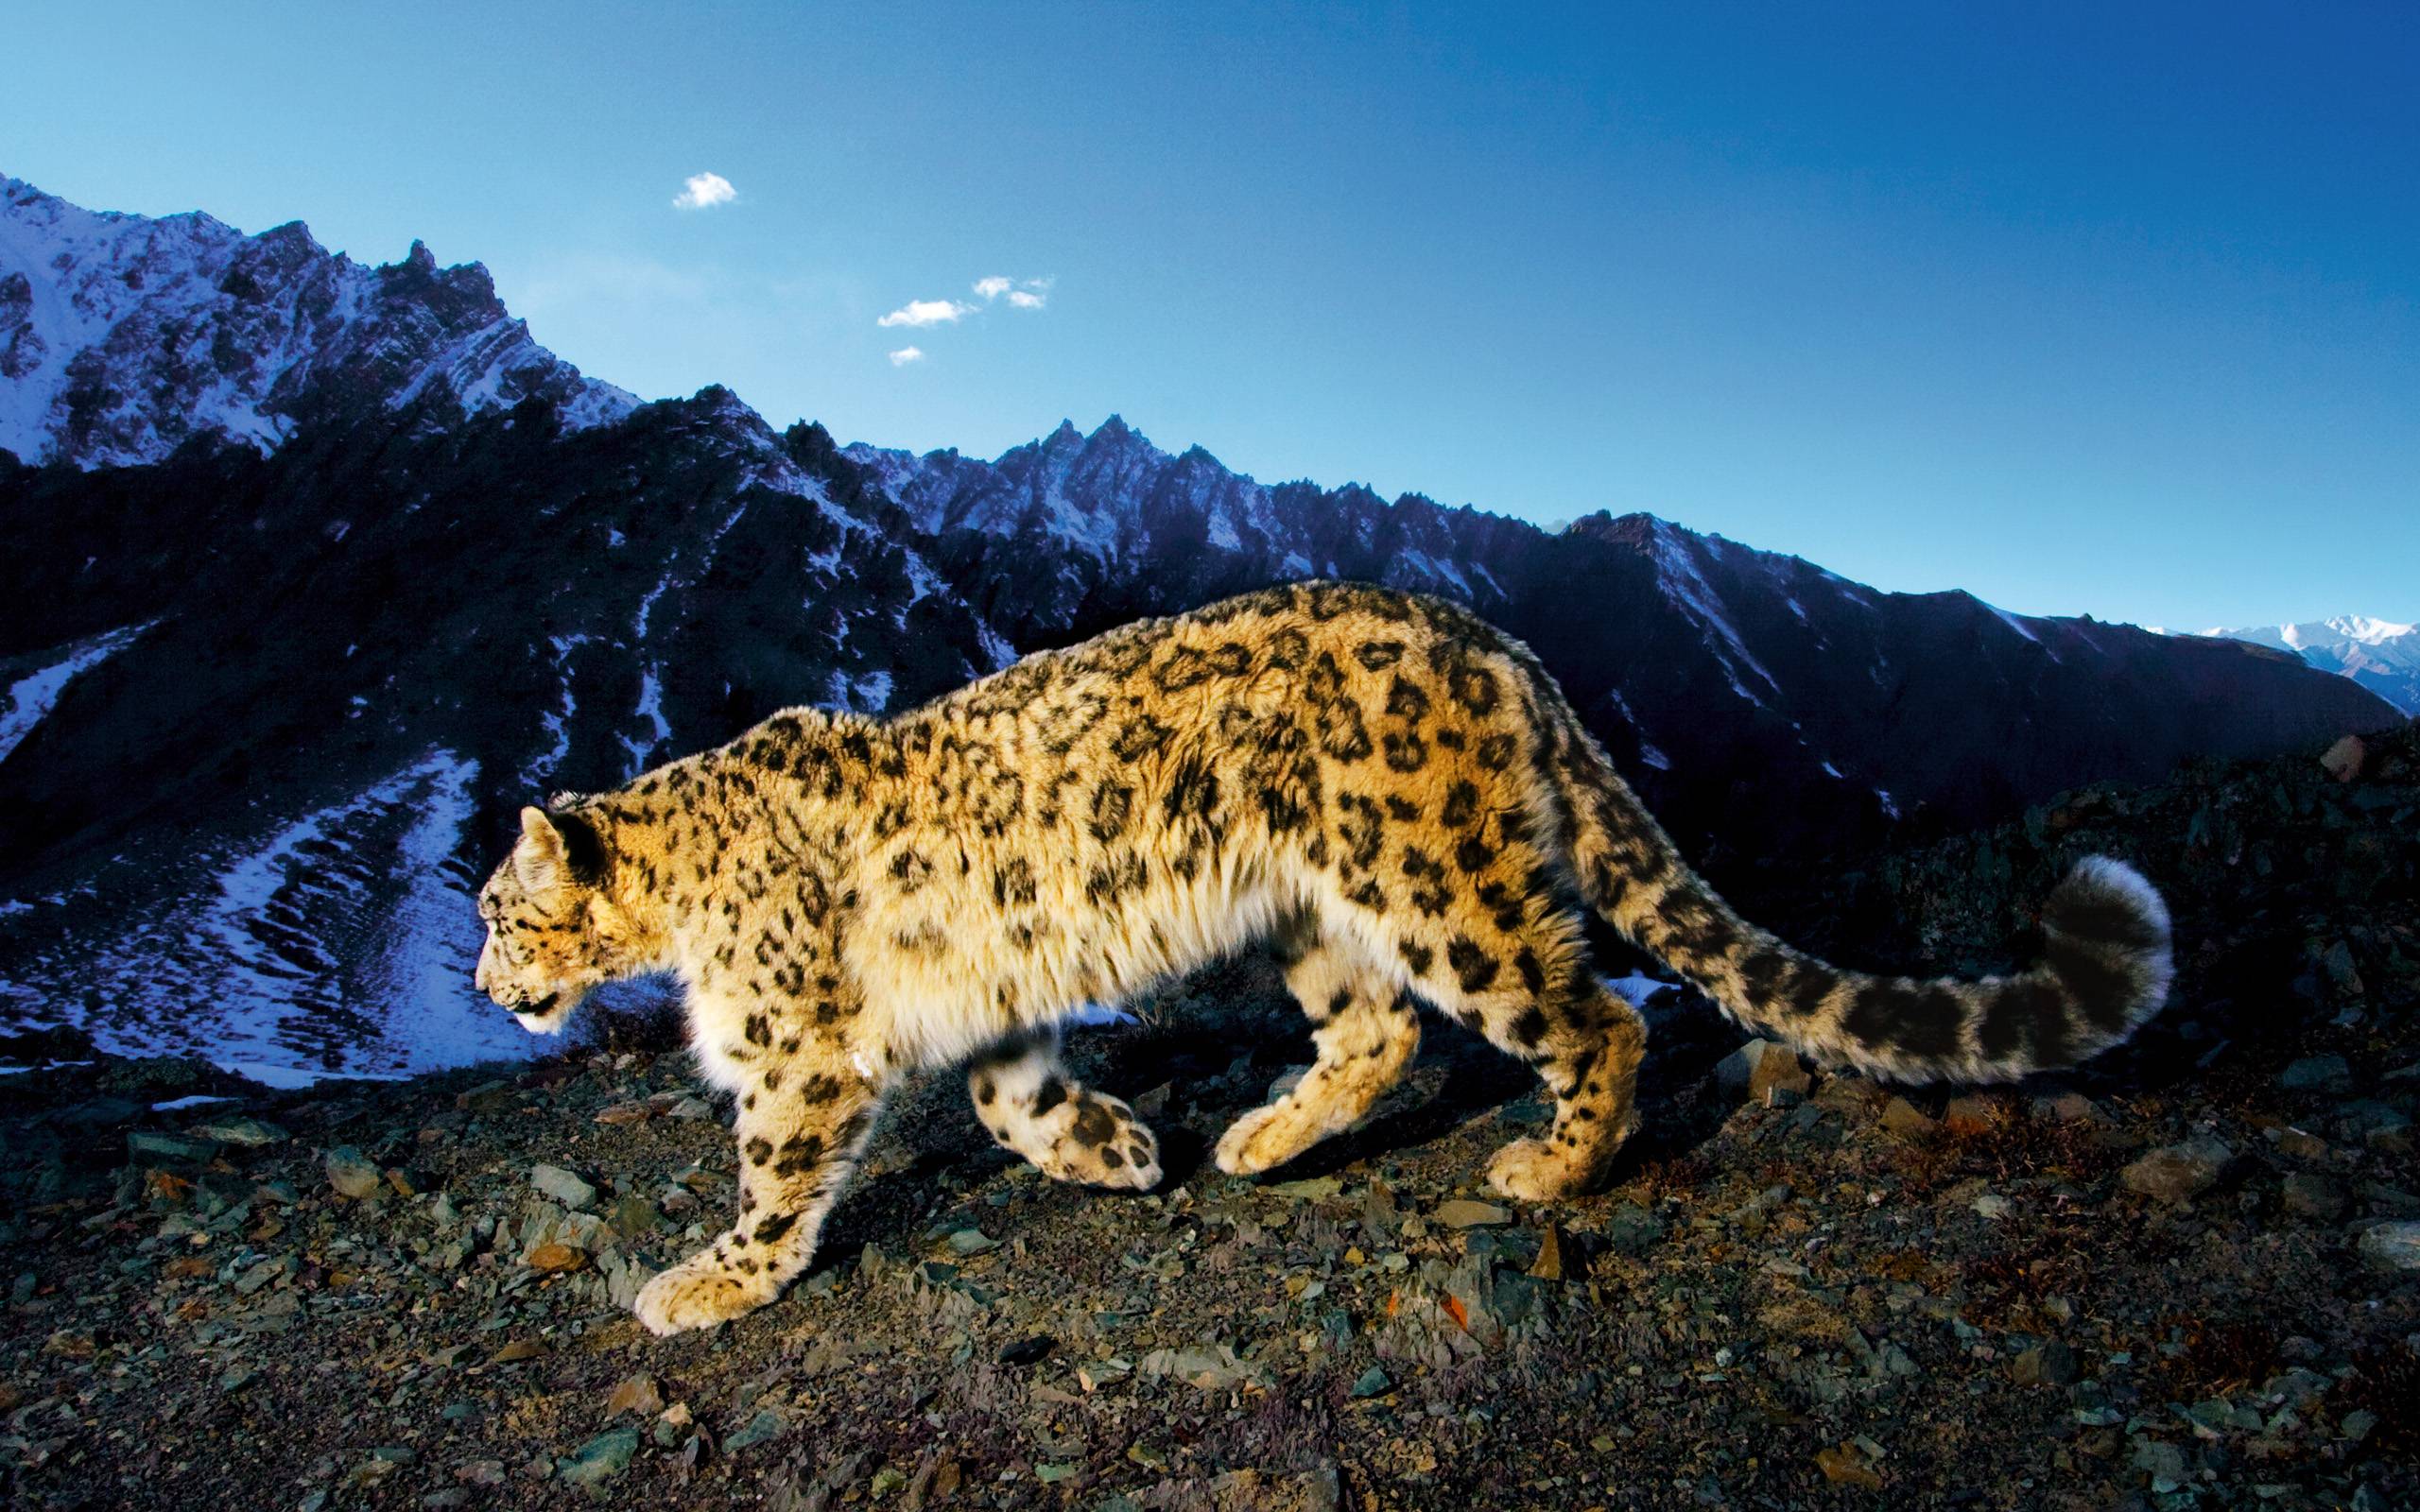 Perian Mac Snow Leopard Download